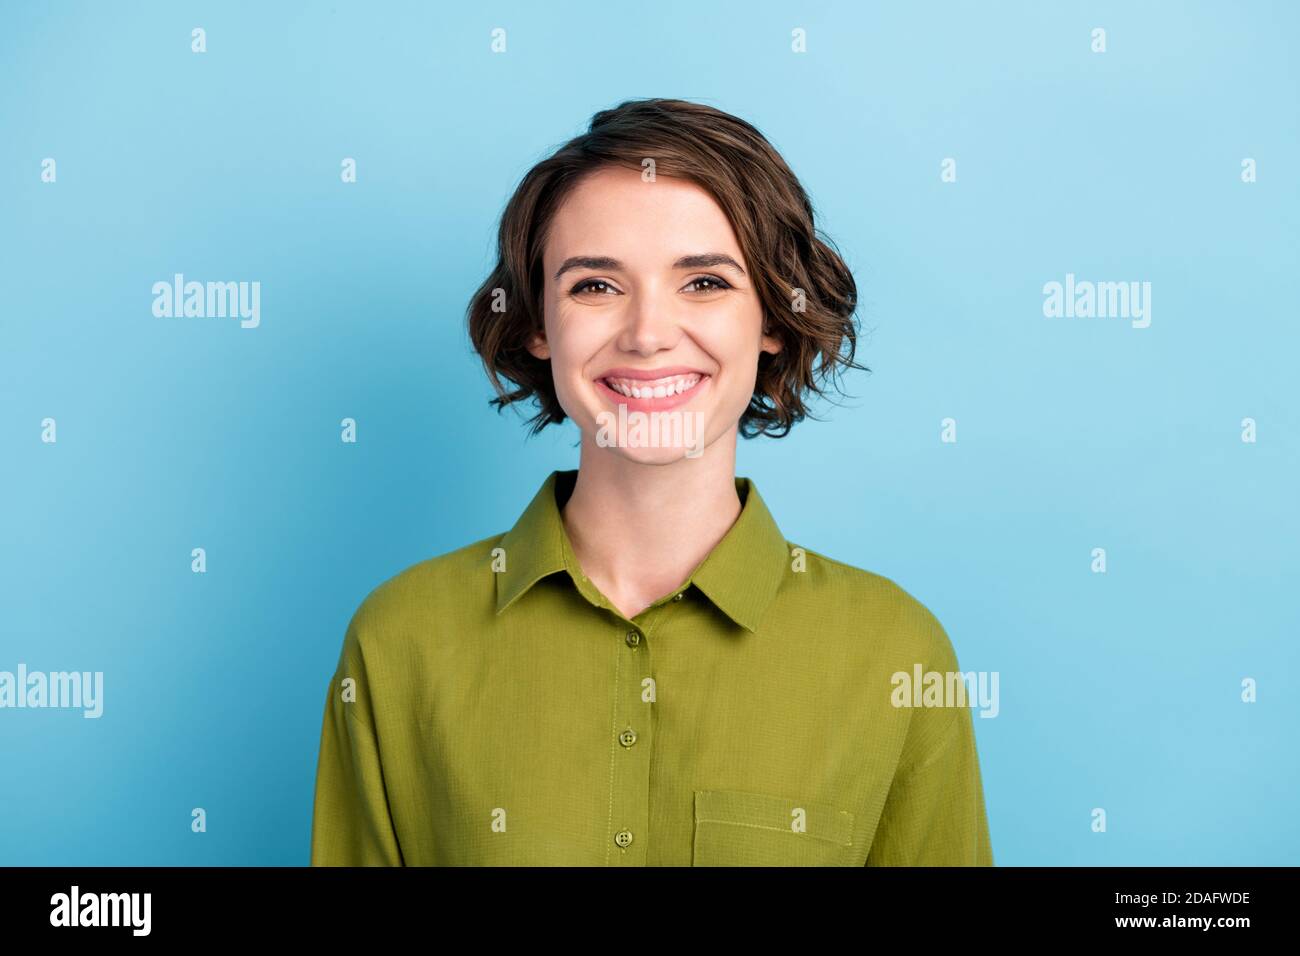 Ritratto fotografico di divertente positivo ottimista ragazza con taglio corto e capelli ondulati sorridenti isolati su sfondo blu Foto Stock